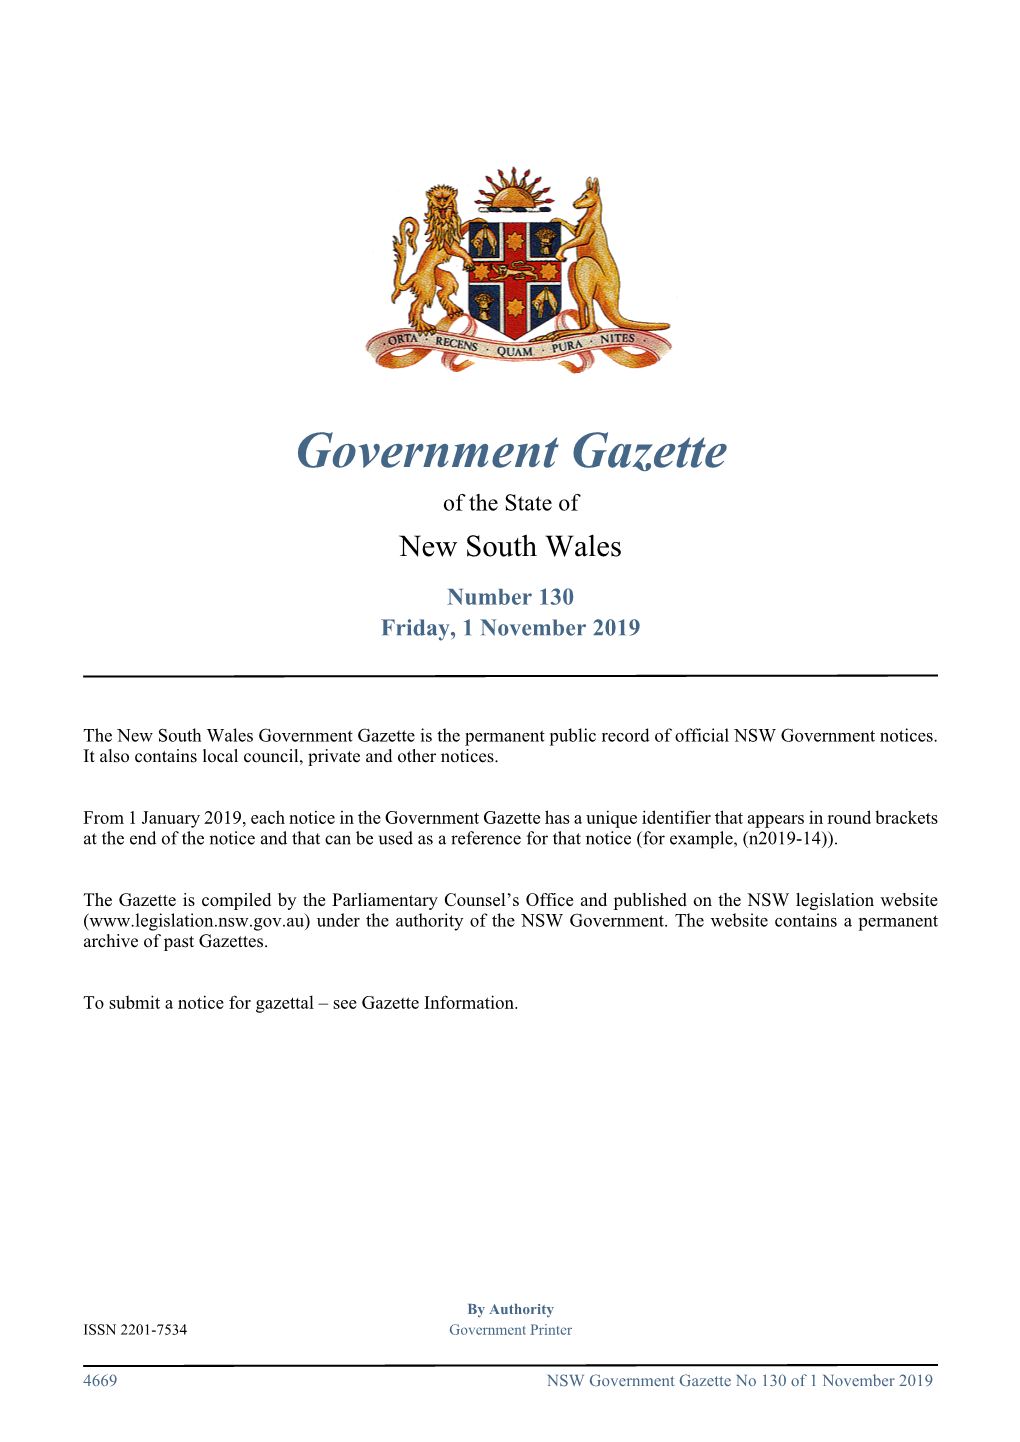 Government Gazette No 130 of Friday 1 November 2019